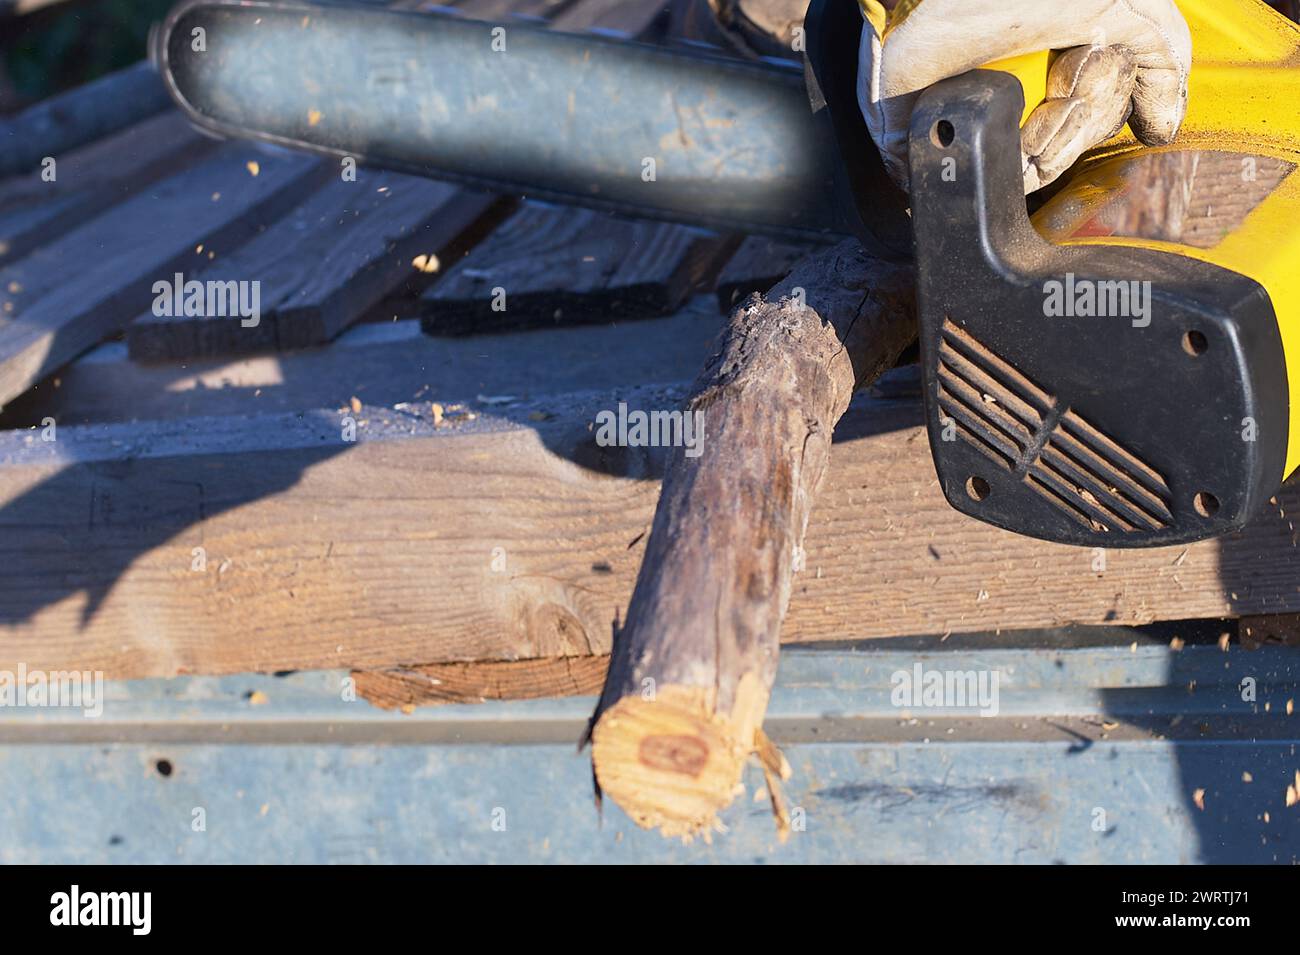 Travailleur coupant du bois à l'extérieur avec une tronçonneuse, concentré et efficace. Banque D'Images